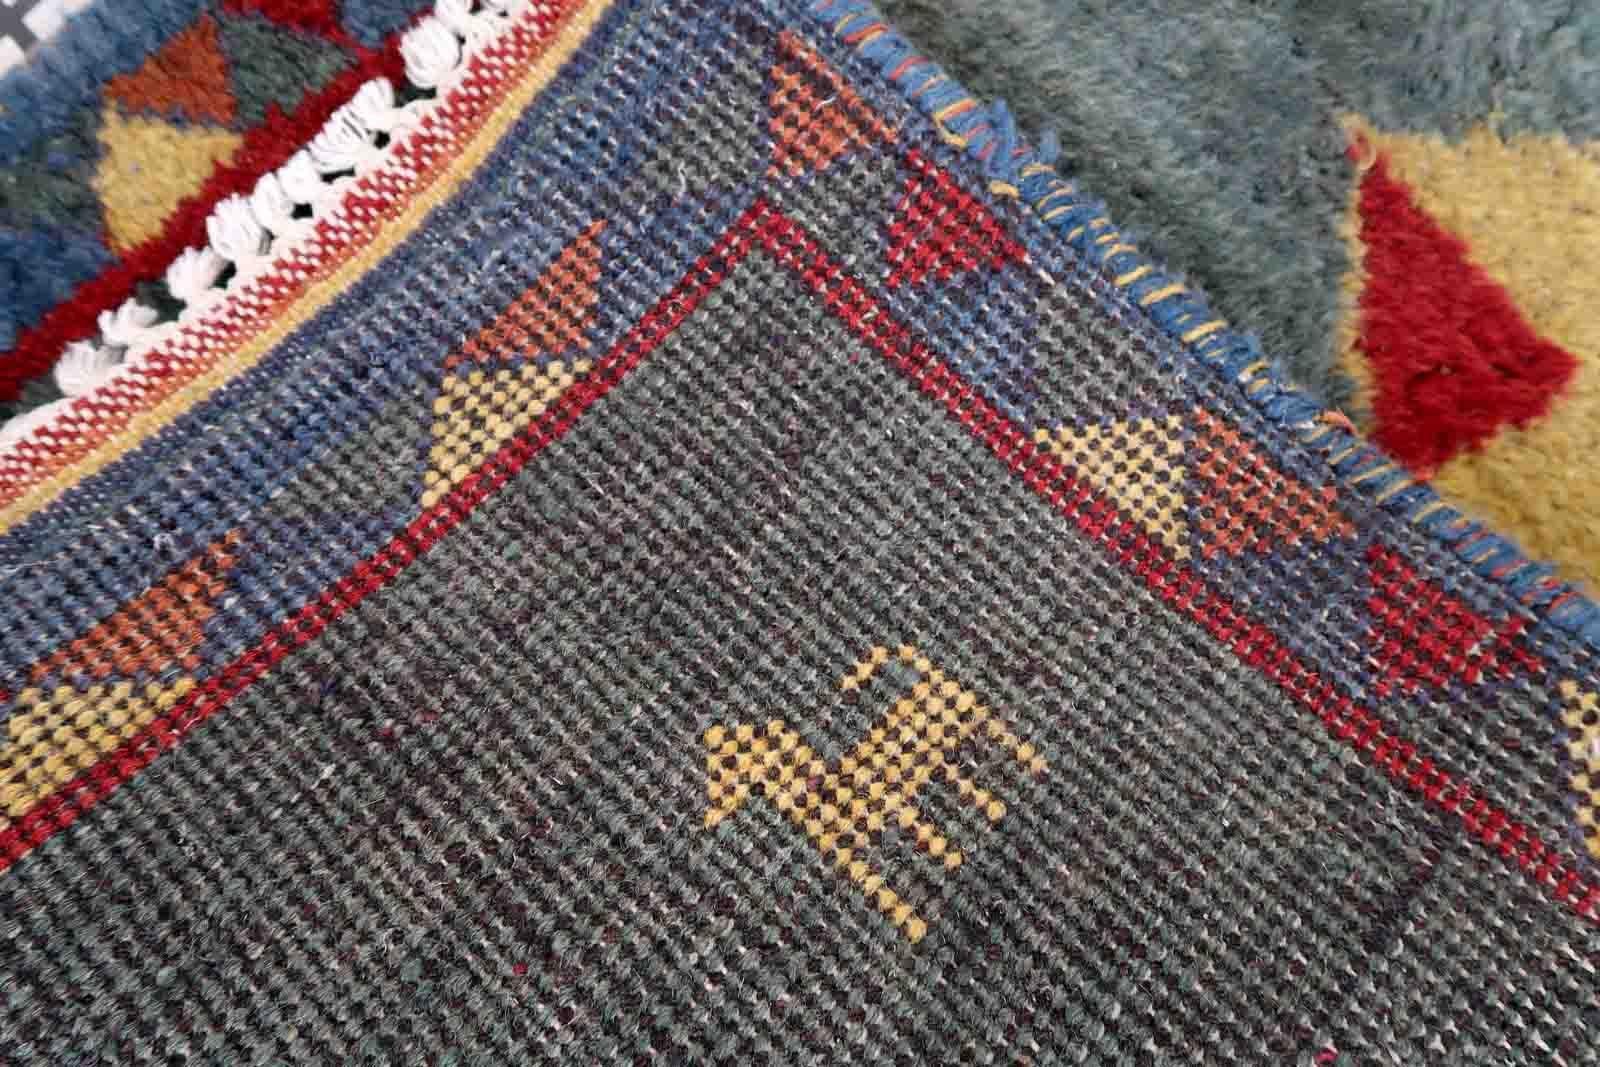 Handgefertigter Gabbeh-Teppich in meergrüner Farbe. Der Teppich stammt aus dem Ende des 20. Jahrhunderts und ist in gutem Originalzustand.

-Zustand: original gut,

-Umgebung: 1970er Jahre,

-Größe: 2,4' x 4,5' (75cm x 139cm),

-MATERIAL: